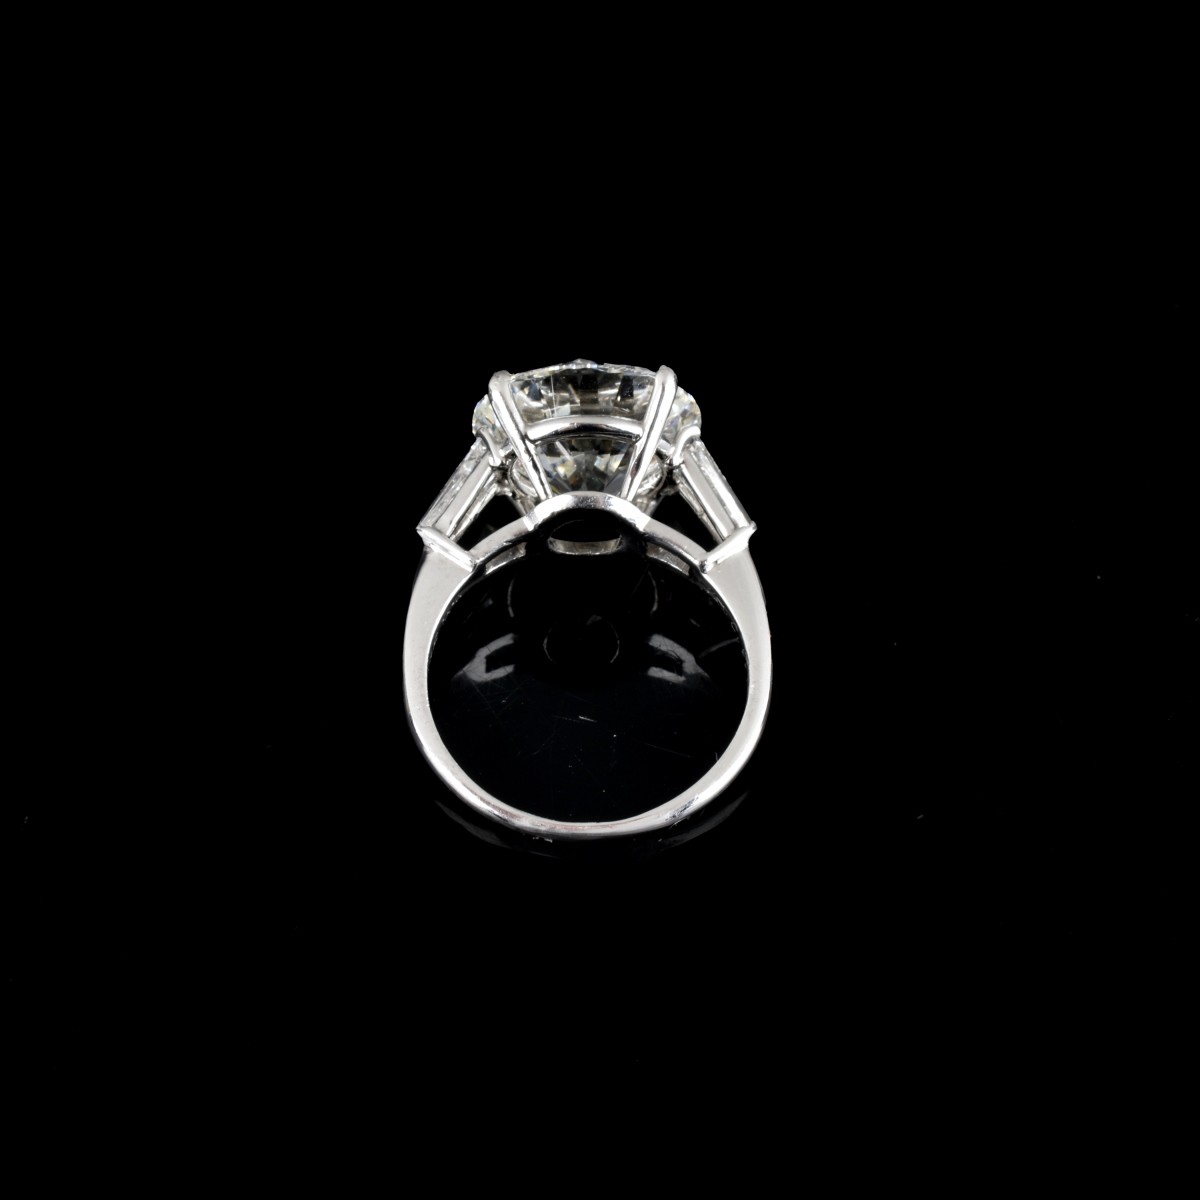 Van Cleef & Arpels Diamond and 18K Ring